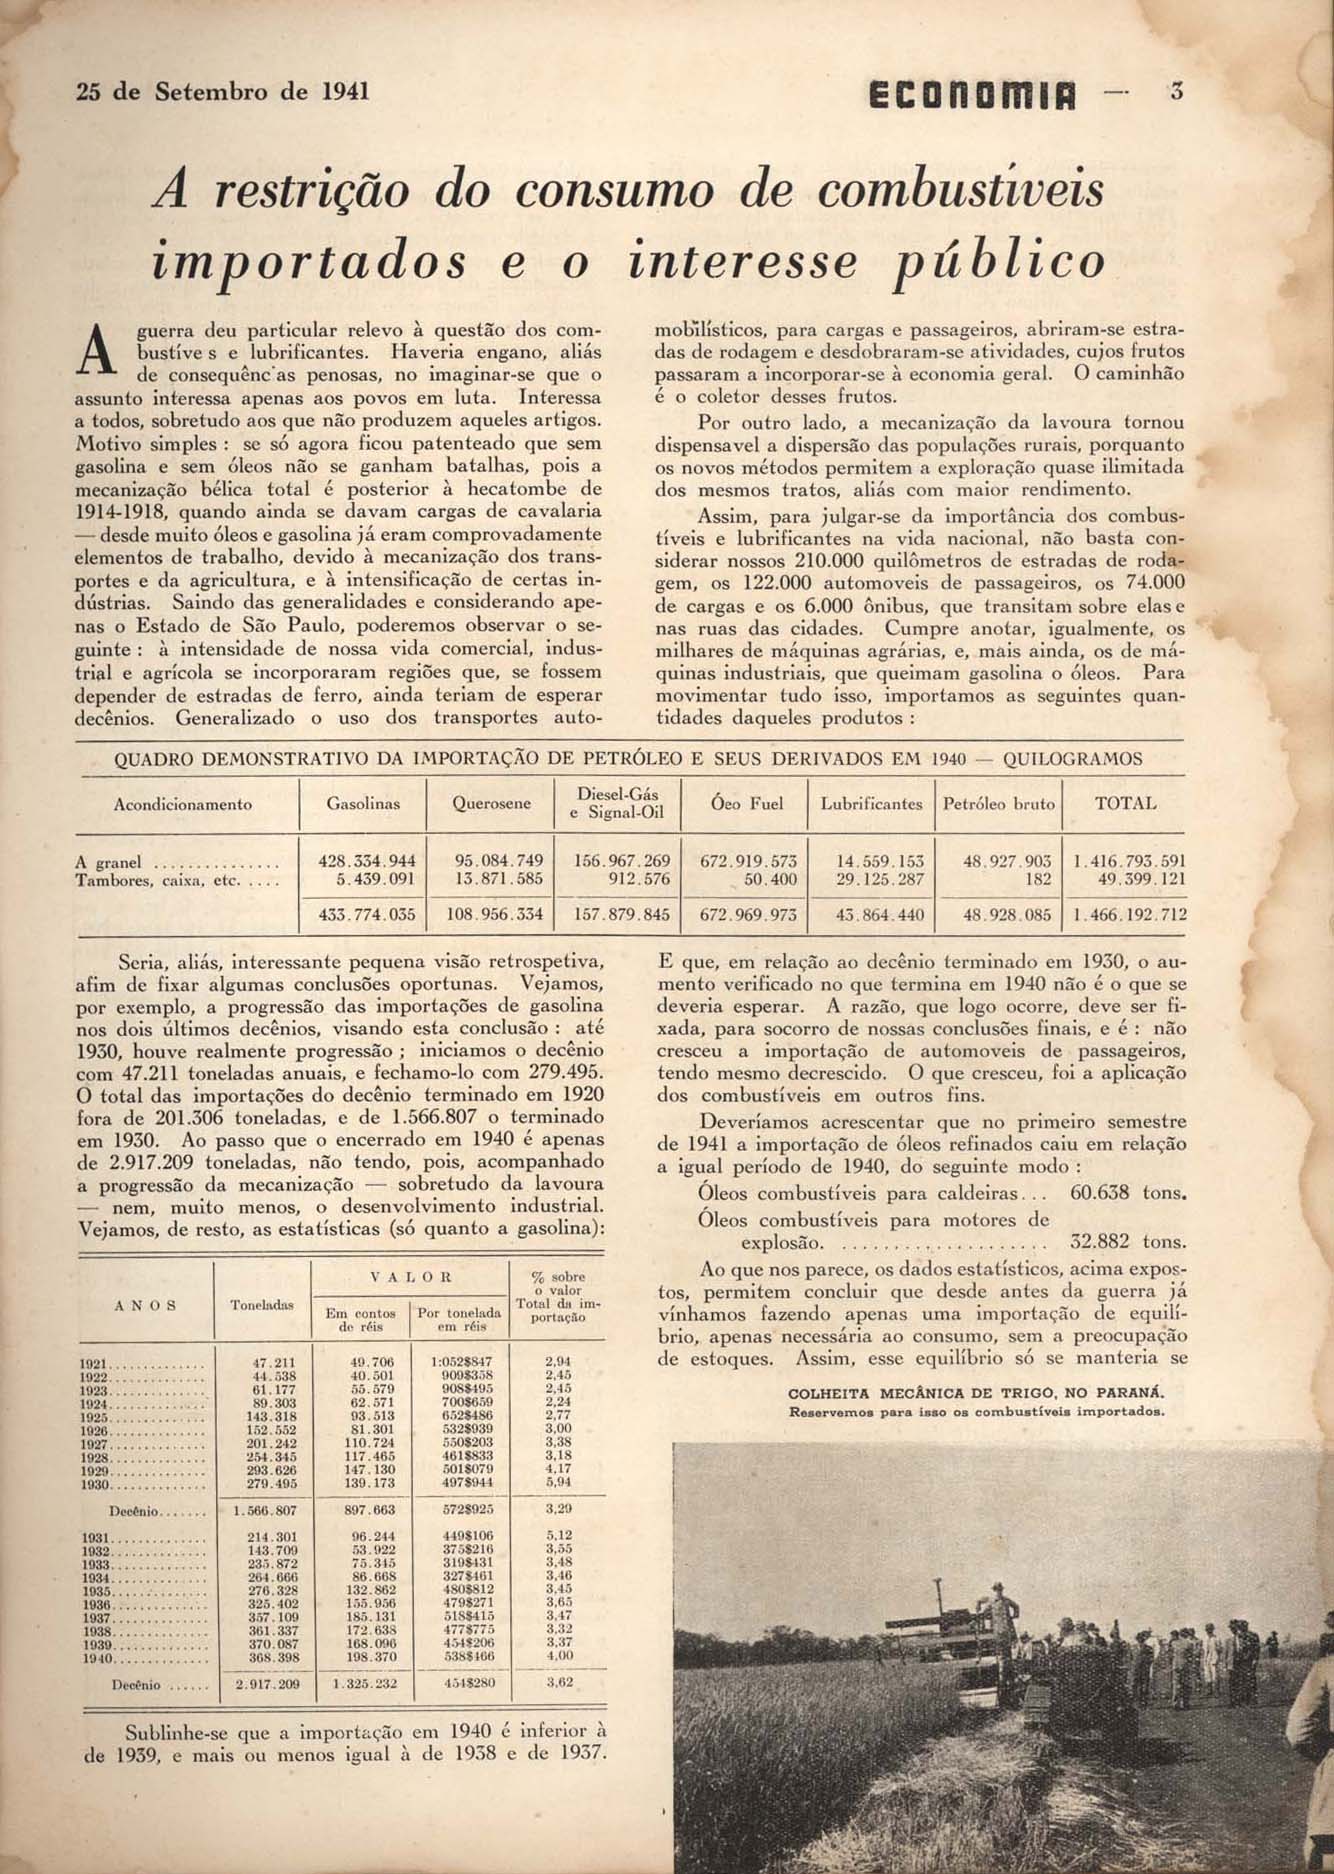 A RESTRIÇÃO do consumo de combustíveis importados e o interesse público. Economia, Rio de Janeiro, n. 28, p. 3-4, set. 1941.